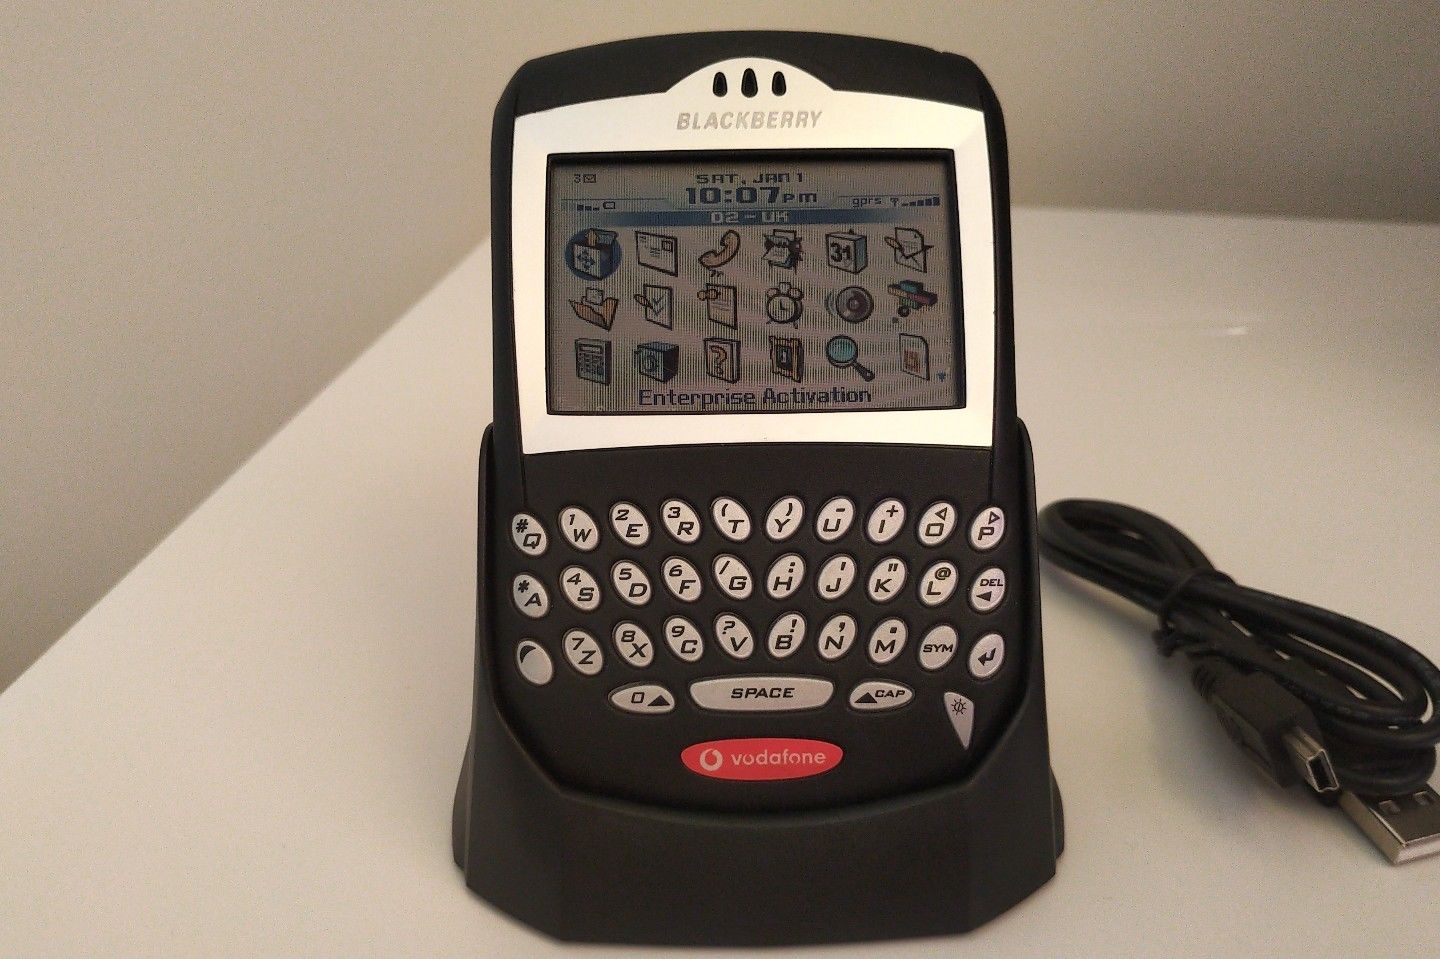 RIM Blackberry 7230 - Vang bóng một thời